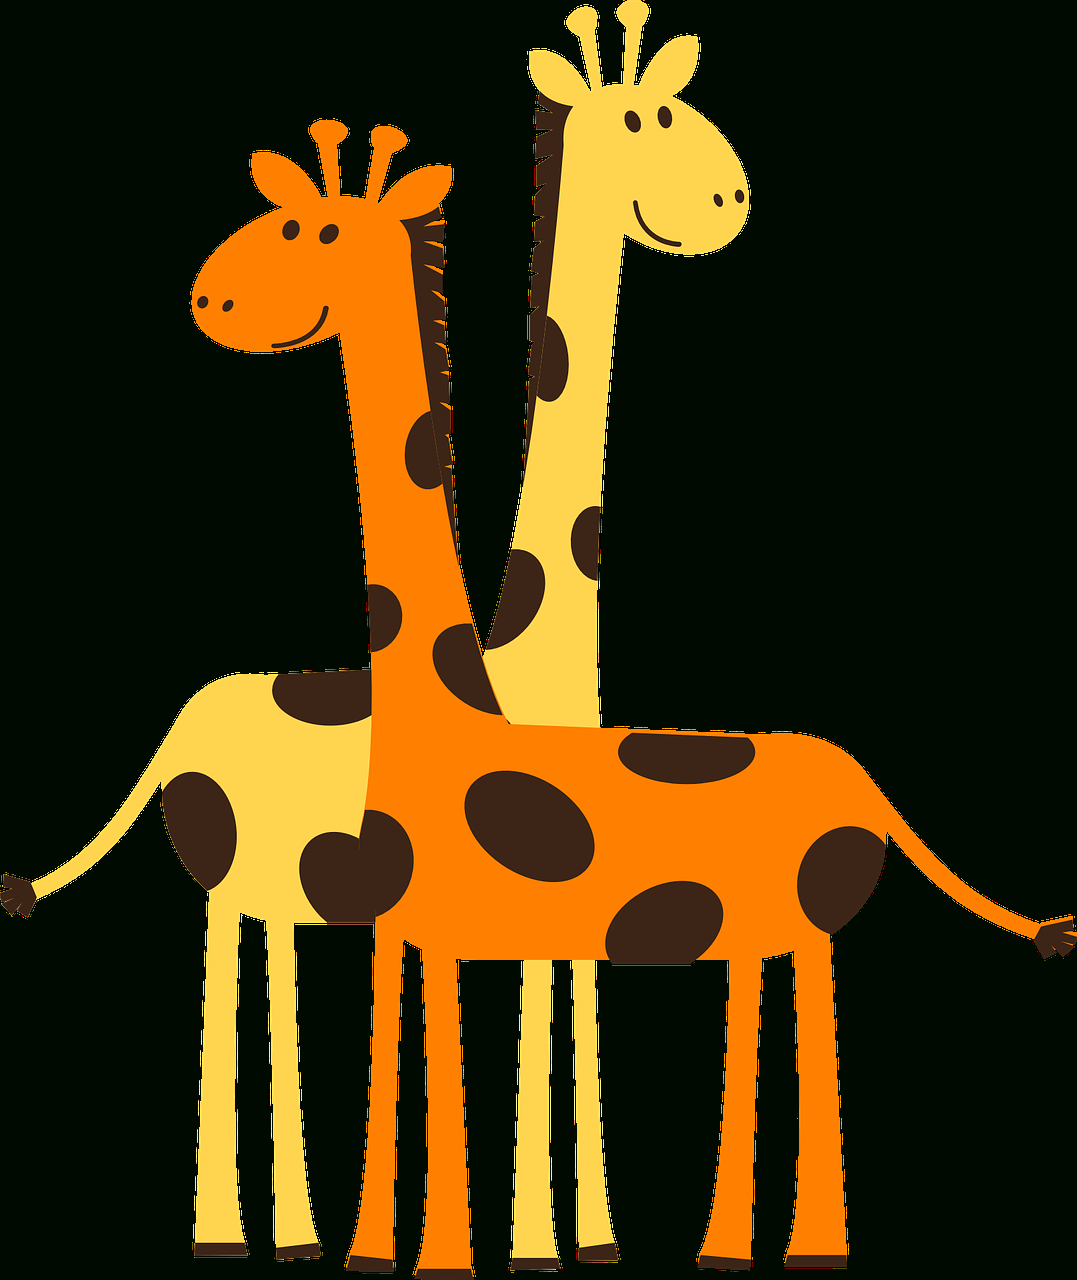 Gratuits : 3 Jeux Pour Se Familiariser Avec La Communication concernant Jeux De Girafe Gratuit